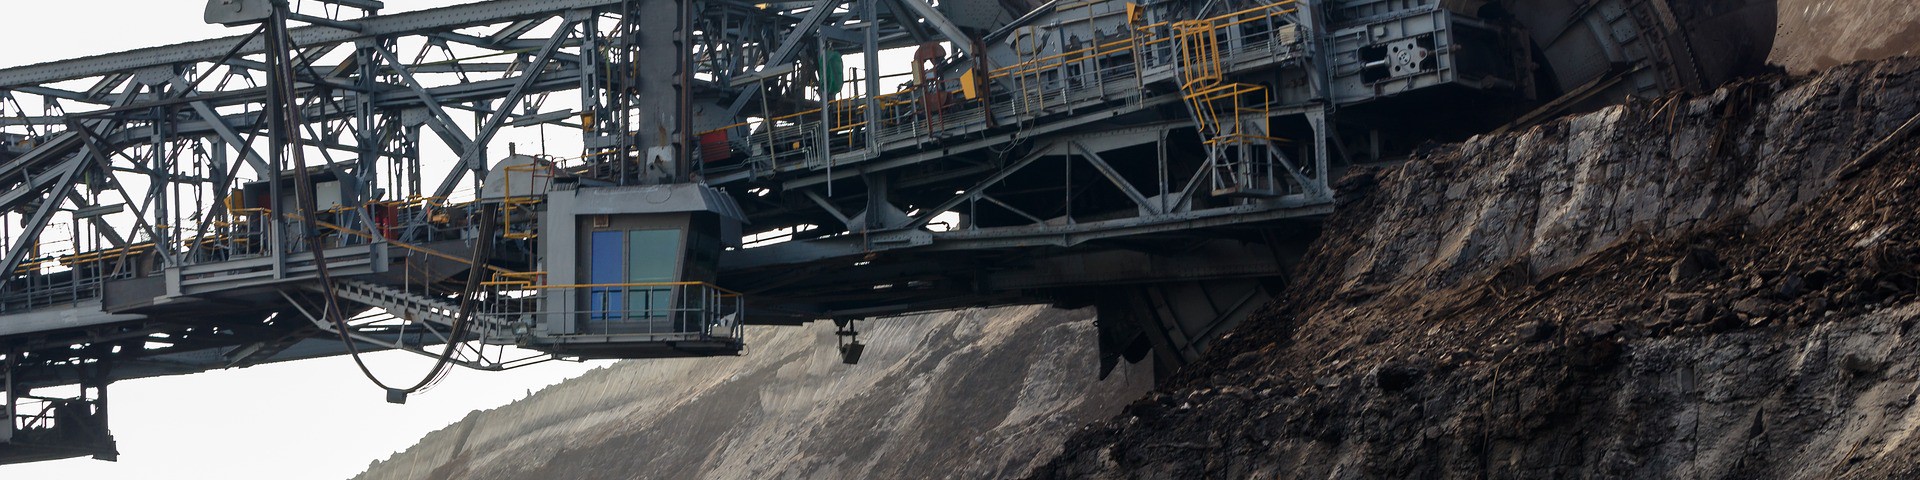 Россия делает ставку на добычу угля